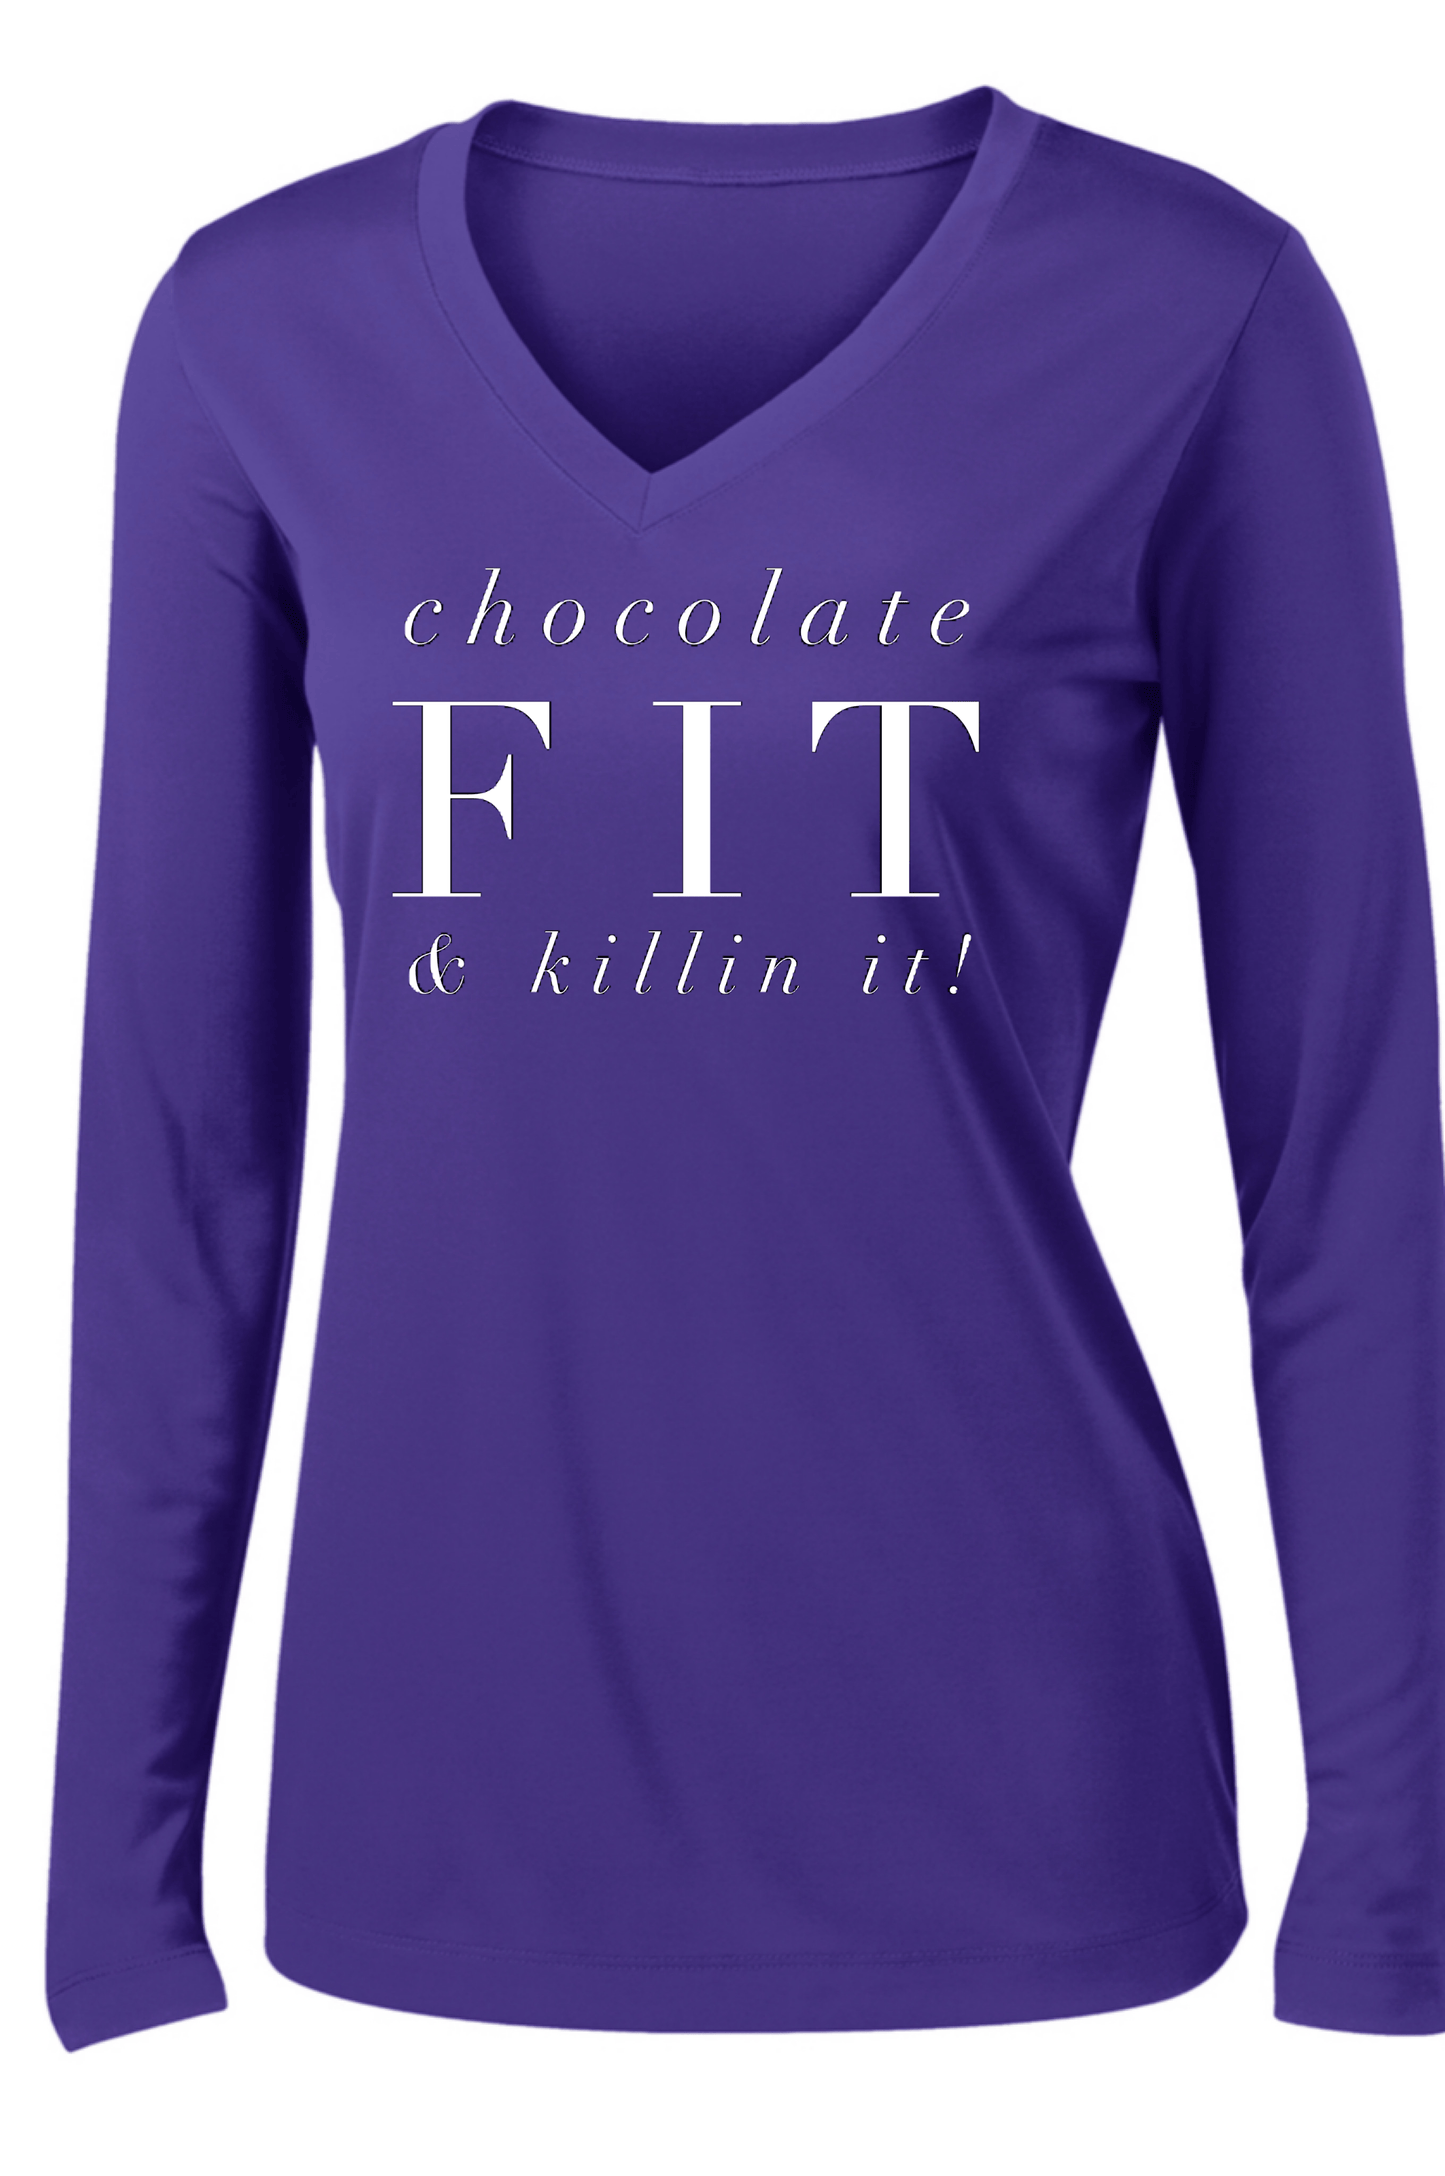 Chocolate Fit & Killin' It! Long Sleeve T Long Sleeve T Sport Tek S Purple 